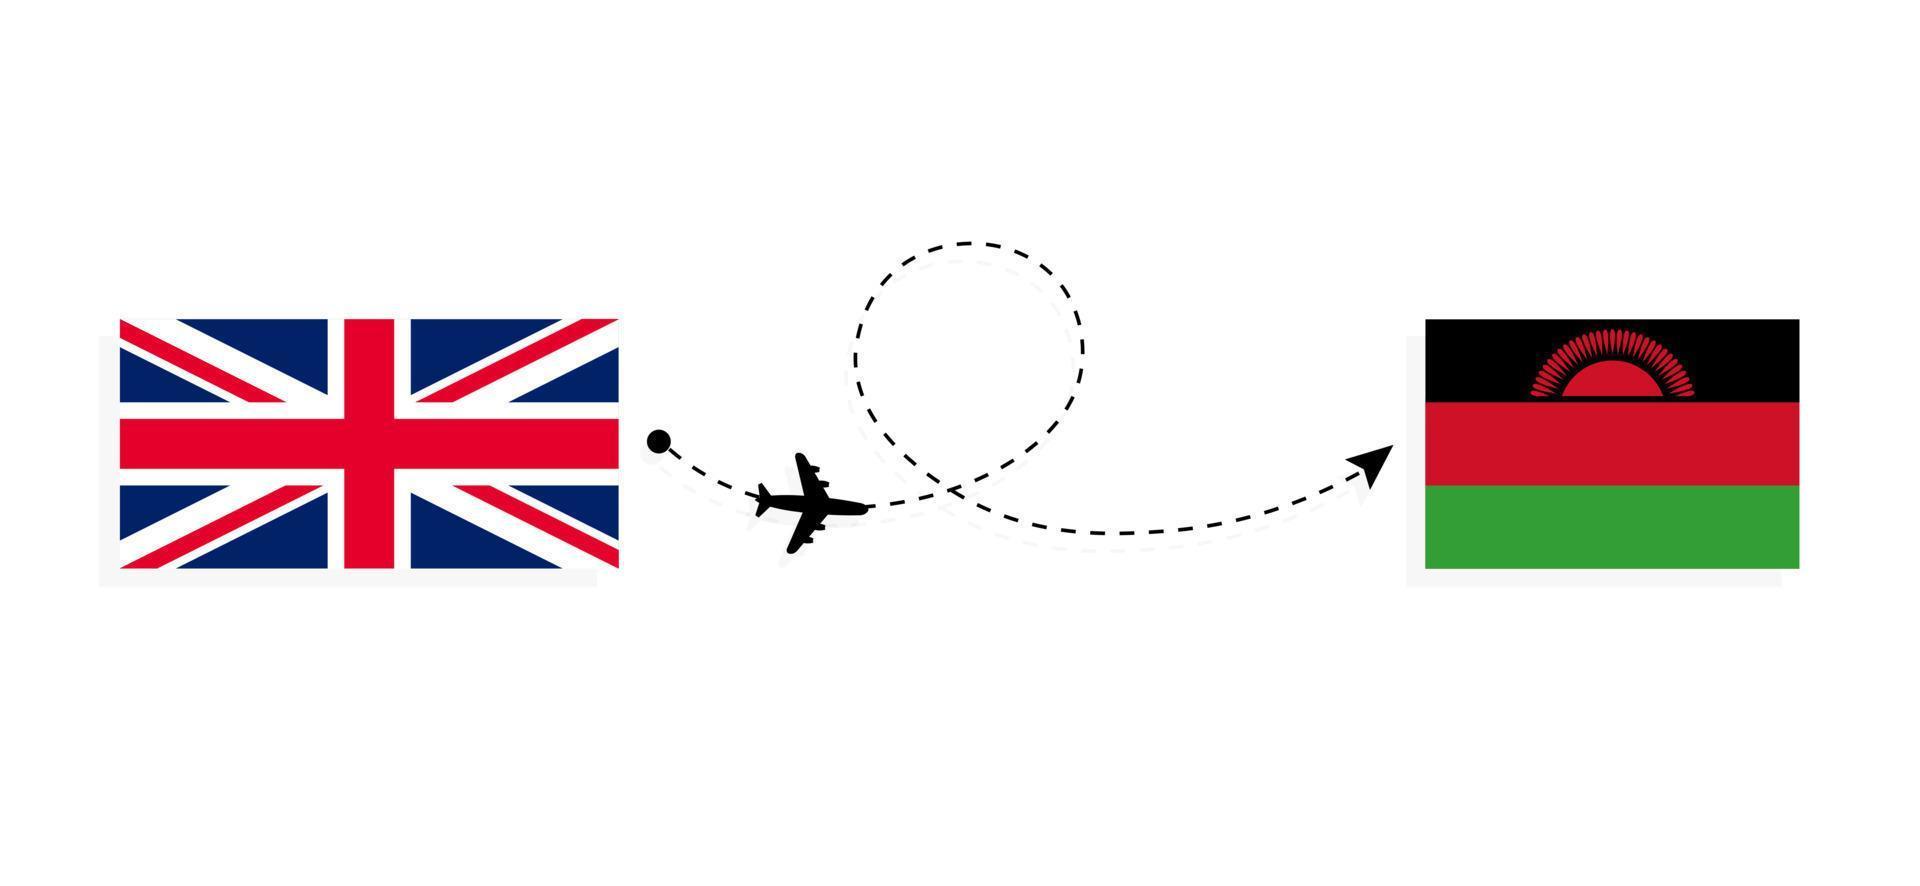 flyg och resor från Storbritannien till Malawi med passagerarflygplan vektor